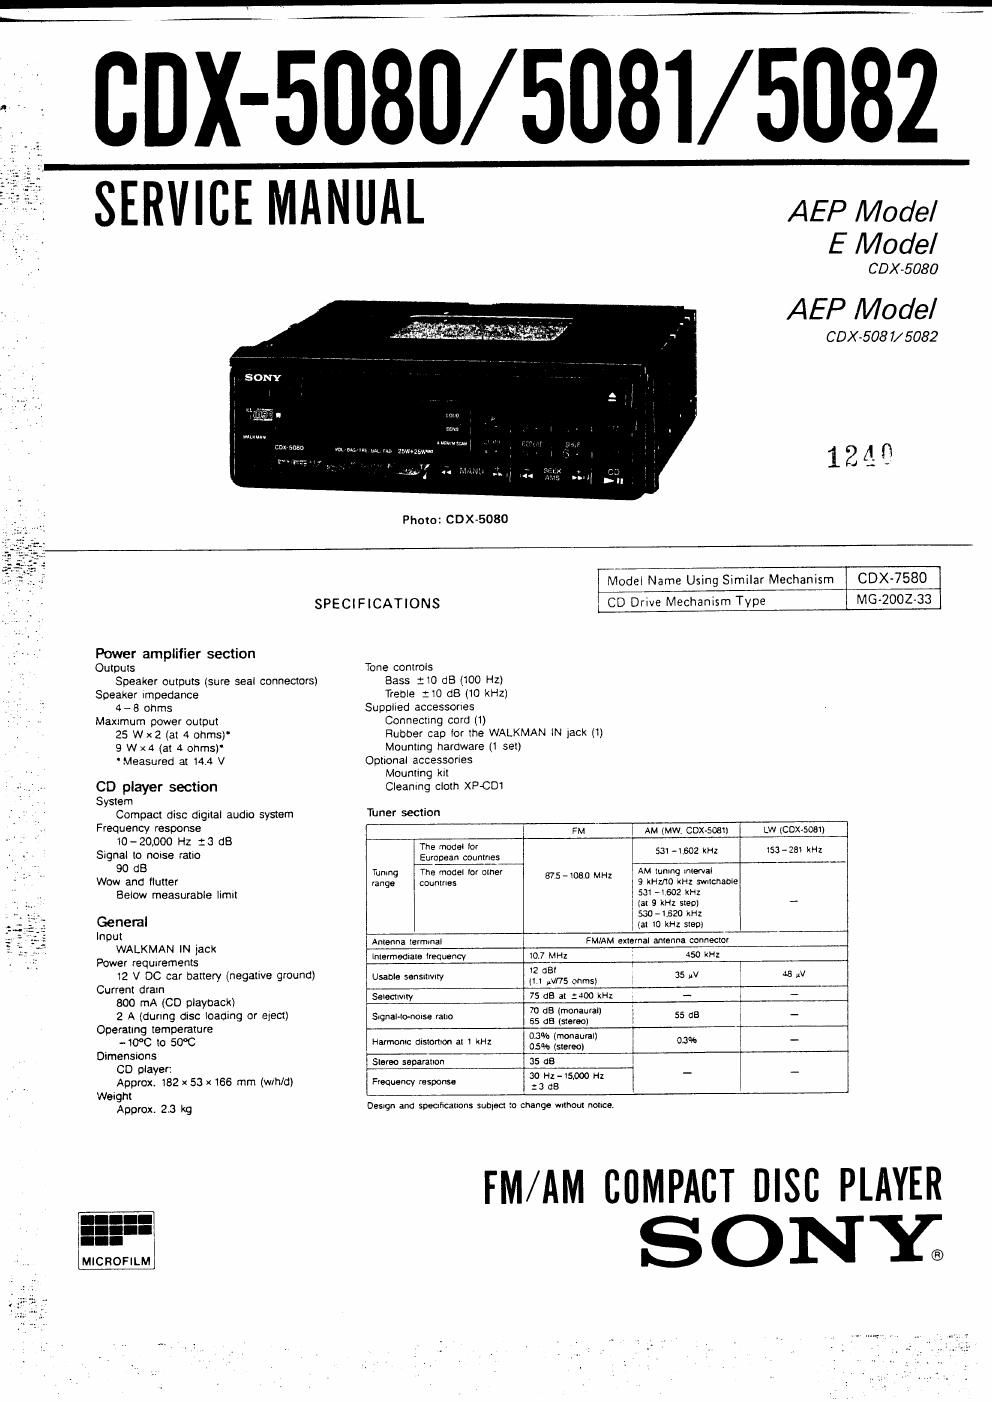 sony cdx 5080 service manual